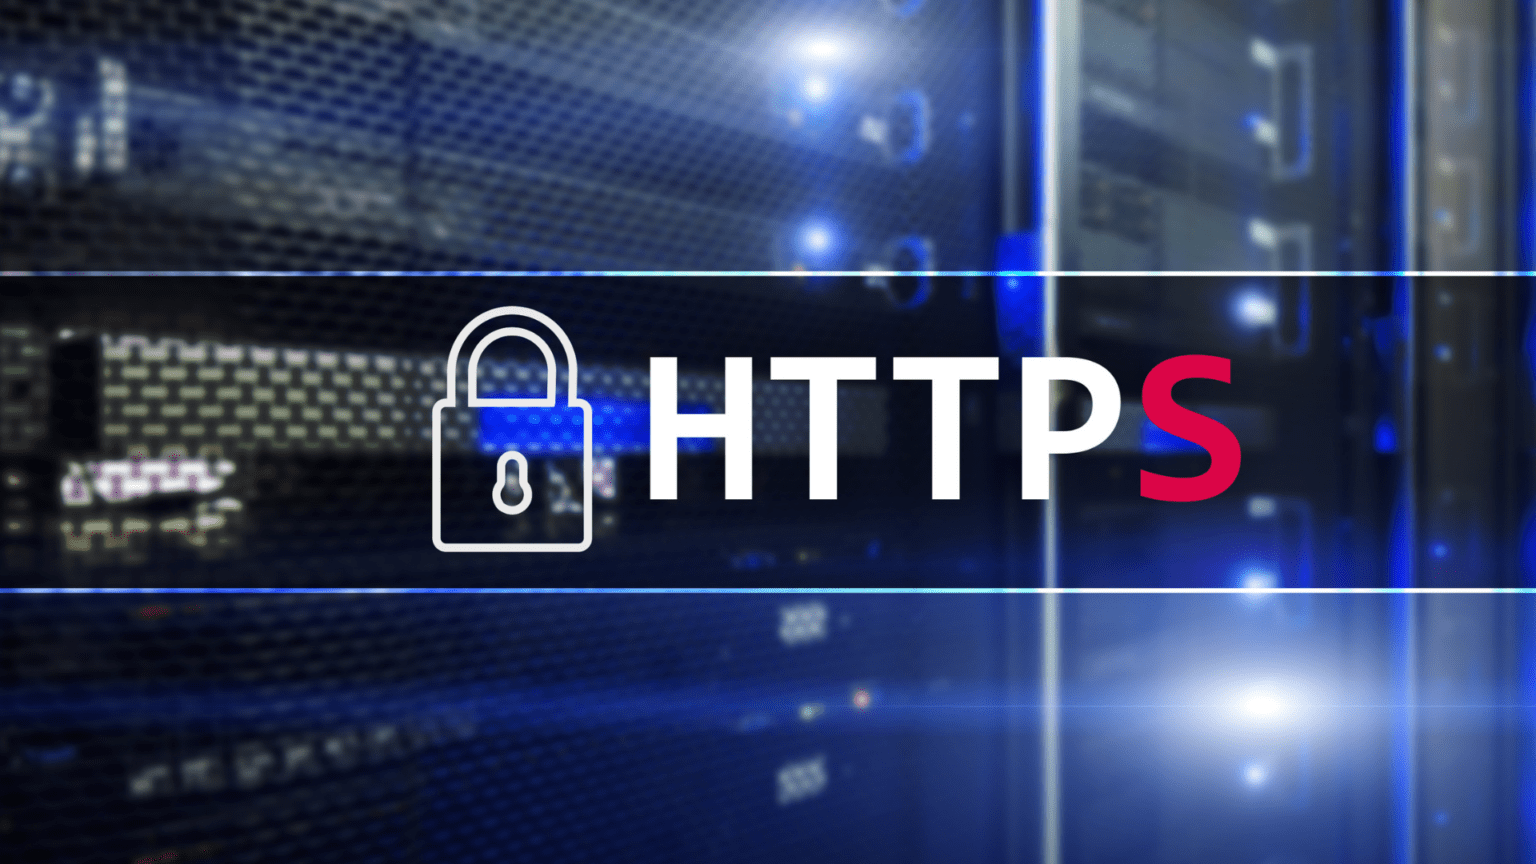 Eingabe einer URL mit "https://" in die Adressleiste eines Webbrowser, neben einem Symbol für das HTTP-Protokoll.